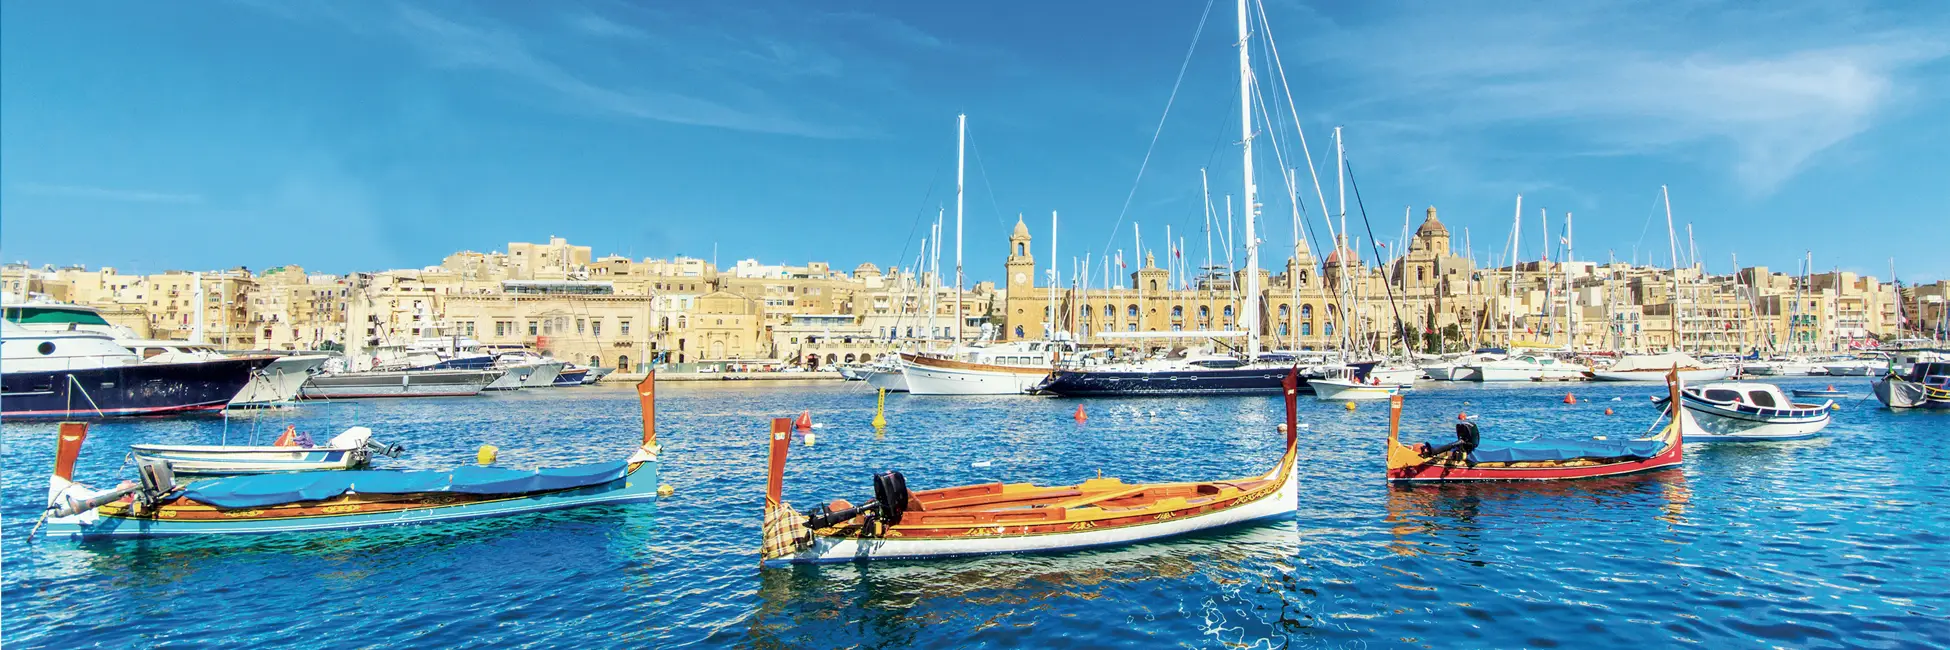 Lavalette à Malte en mer Méditerranée 